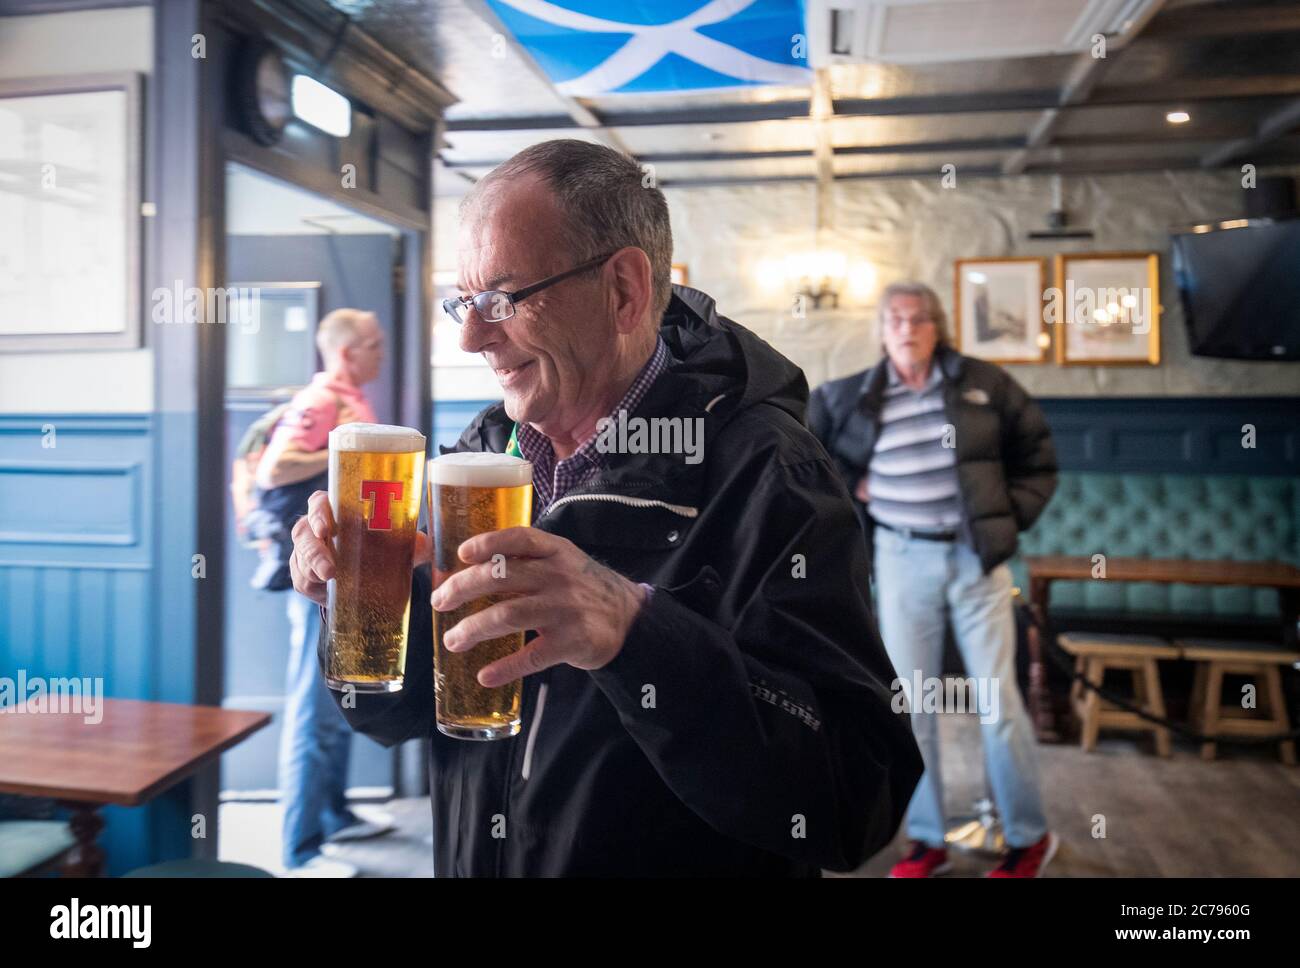 George McDonald von Clemiston ist der erste Kunde, der im Scotsman's Lounge Pub in Edinburgh serviert wird, da Pubs, Bars und Restaurants in ganz Schottland zum ersten Mal seit März nach Aufhebung der weiteren Beschränkungen für die Sperrung durch Coronaviren Innenbereiche eröffnet haben. Stockfoto